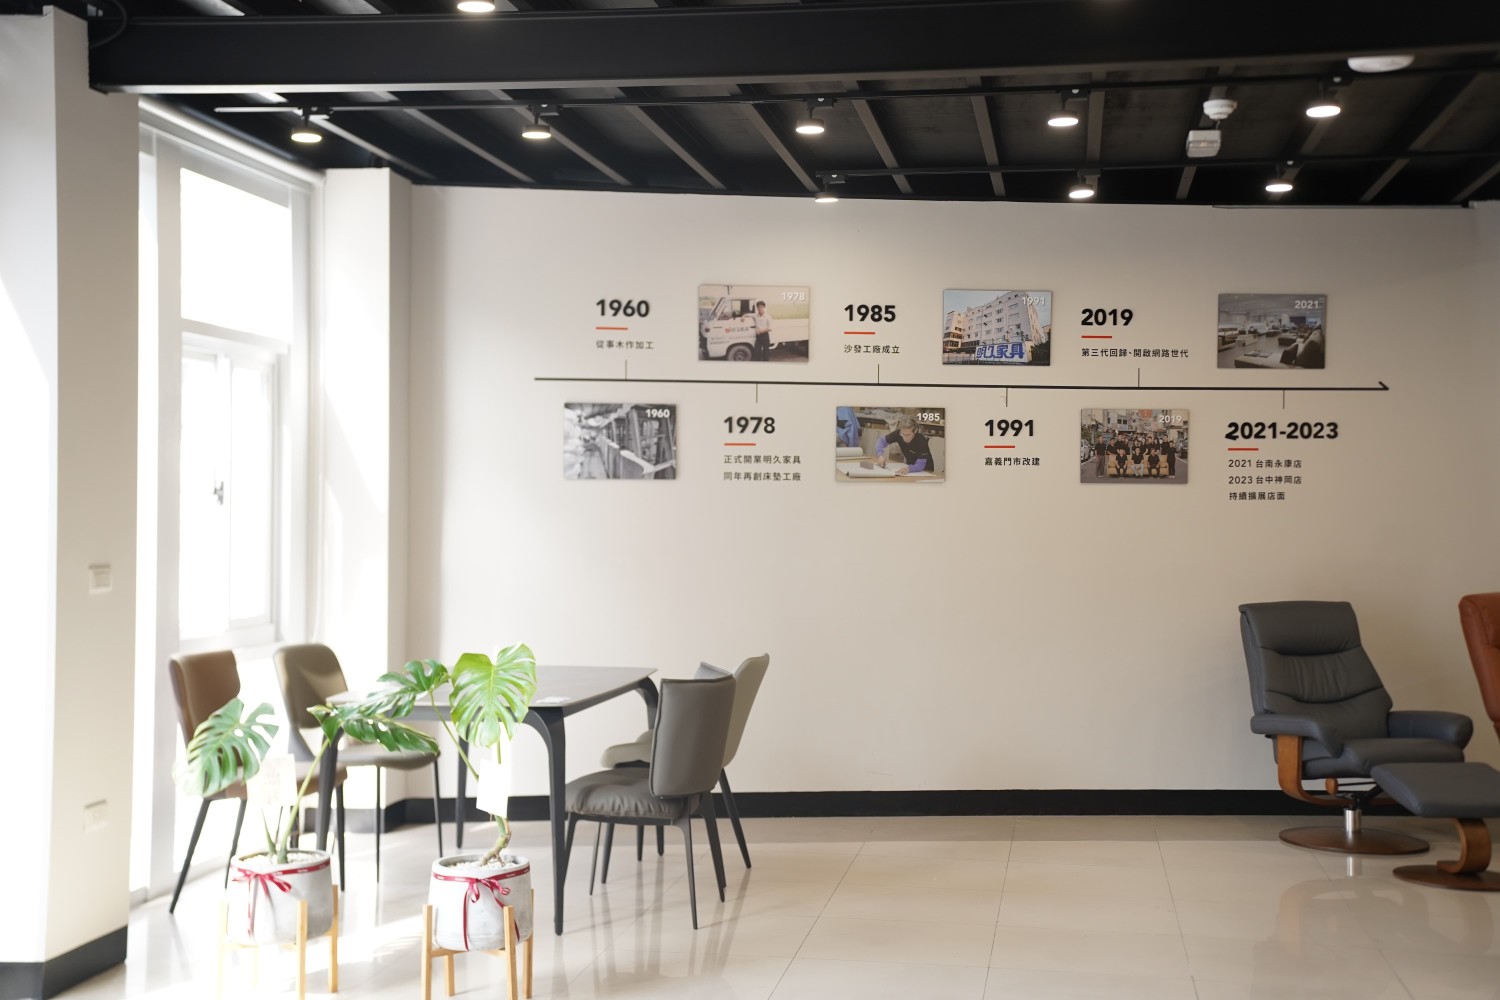 明久家具台中店品牌歷史牆，收錄明久家具品牌發展的過程。